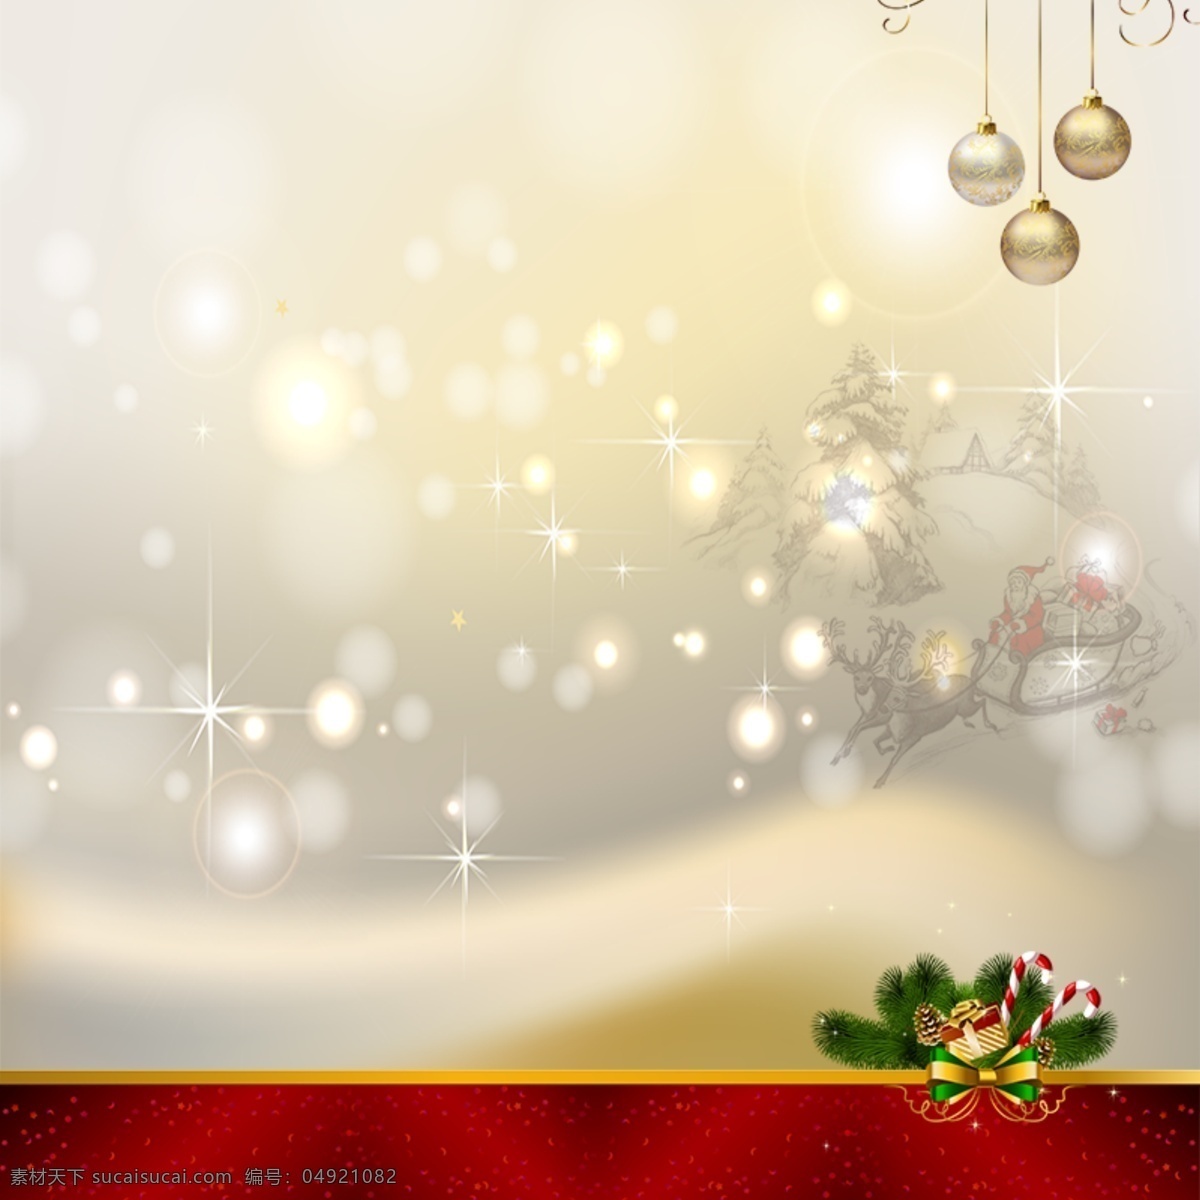 圣诞节背景 圣诞节 礼品 树 星光 白色